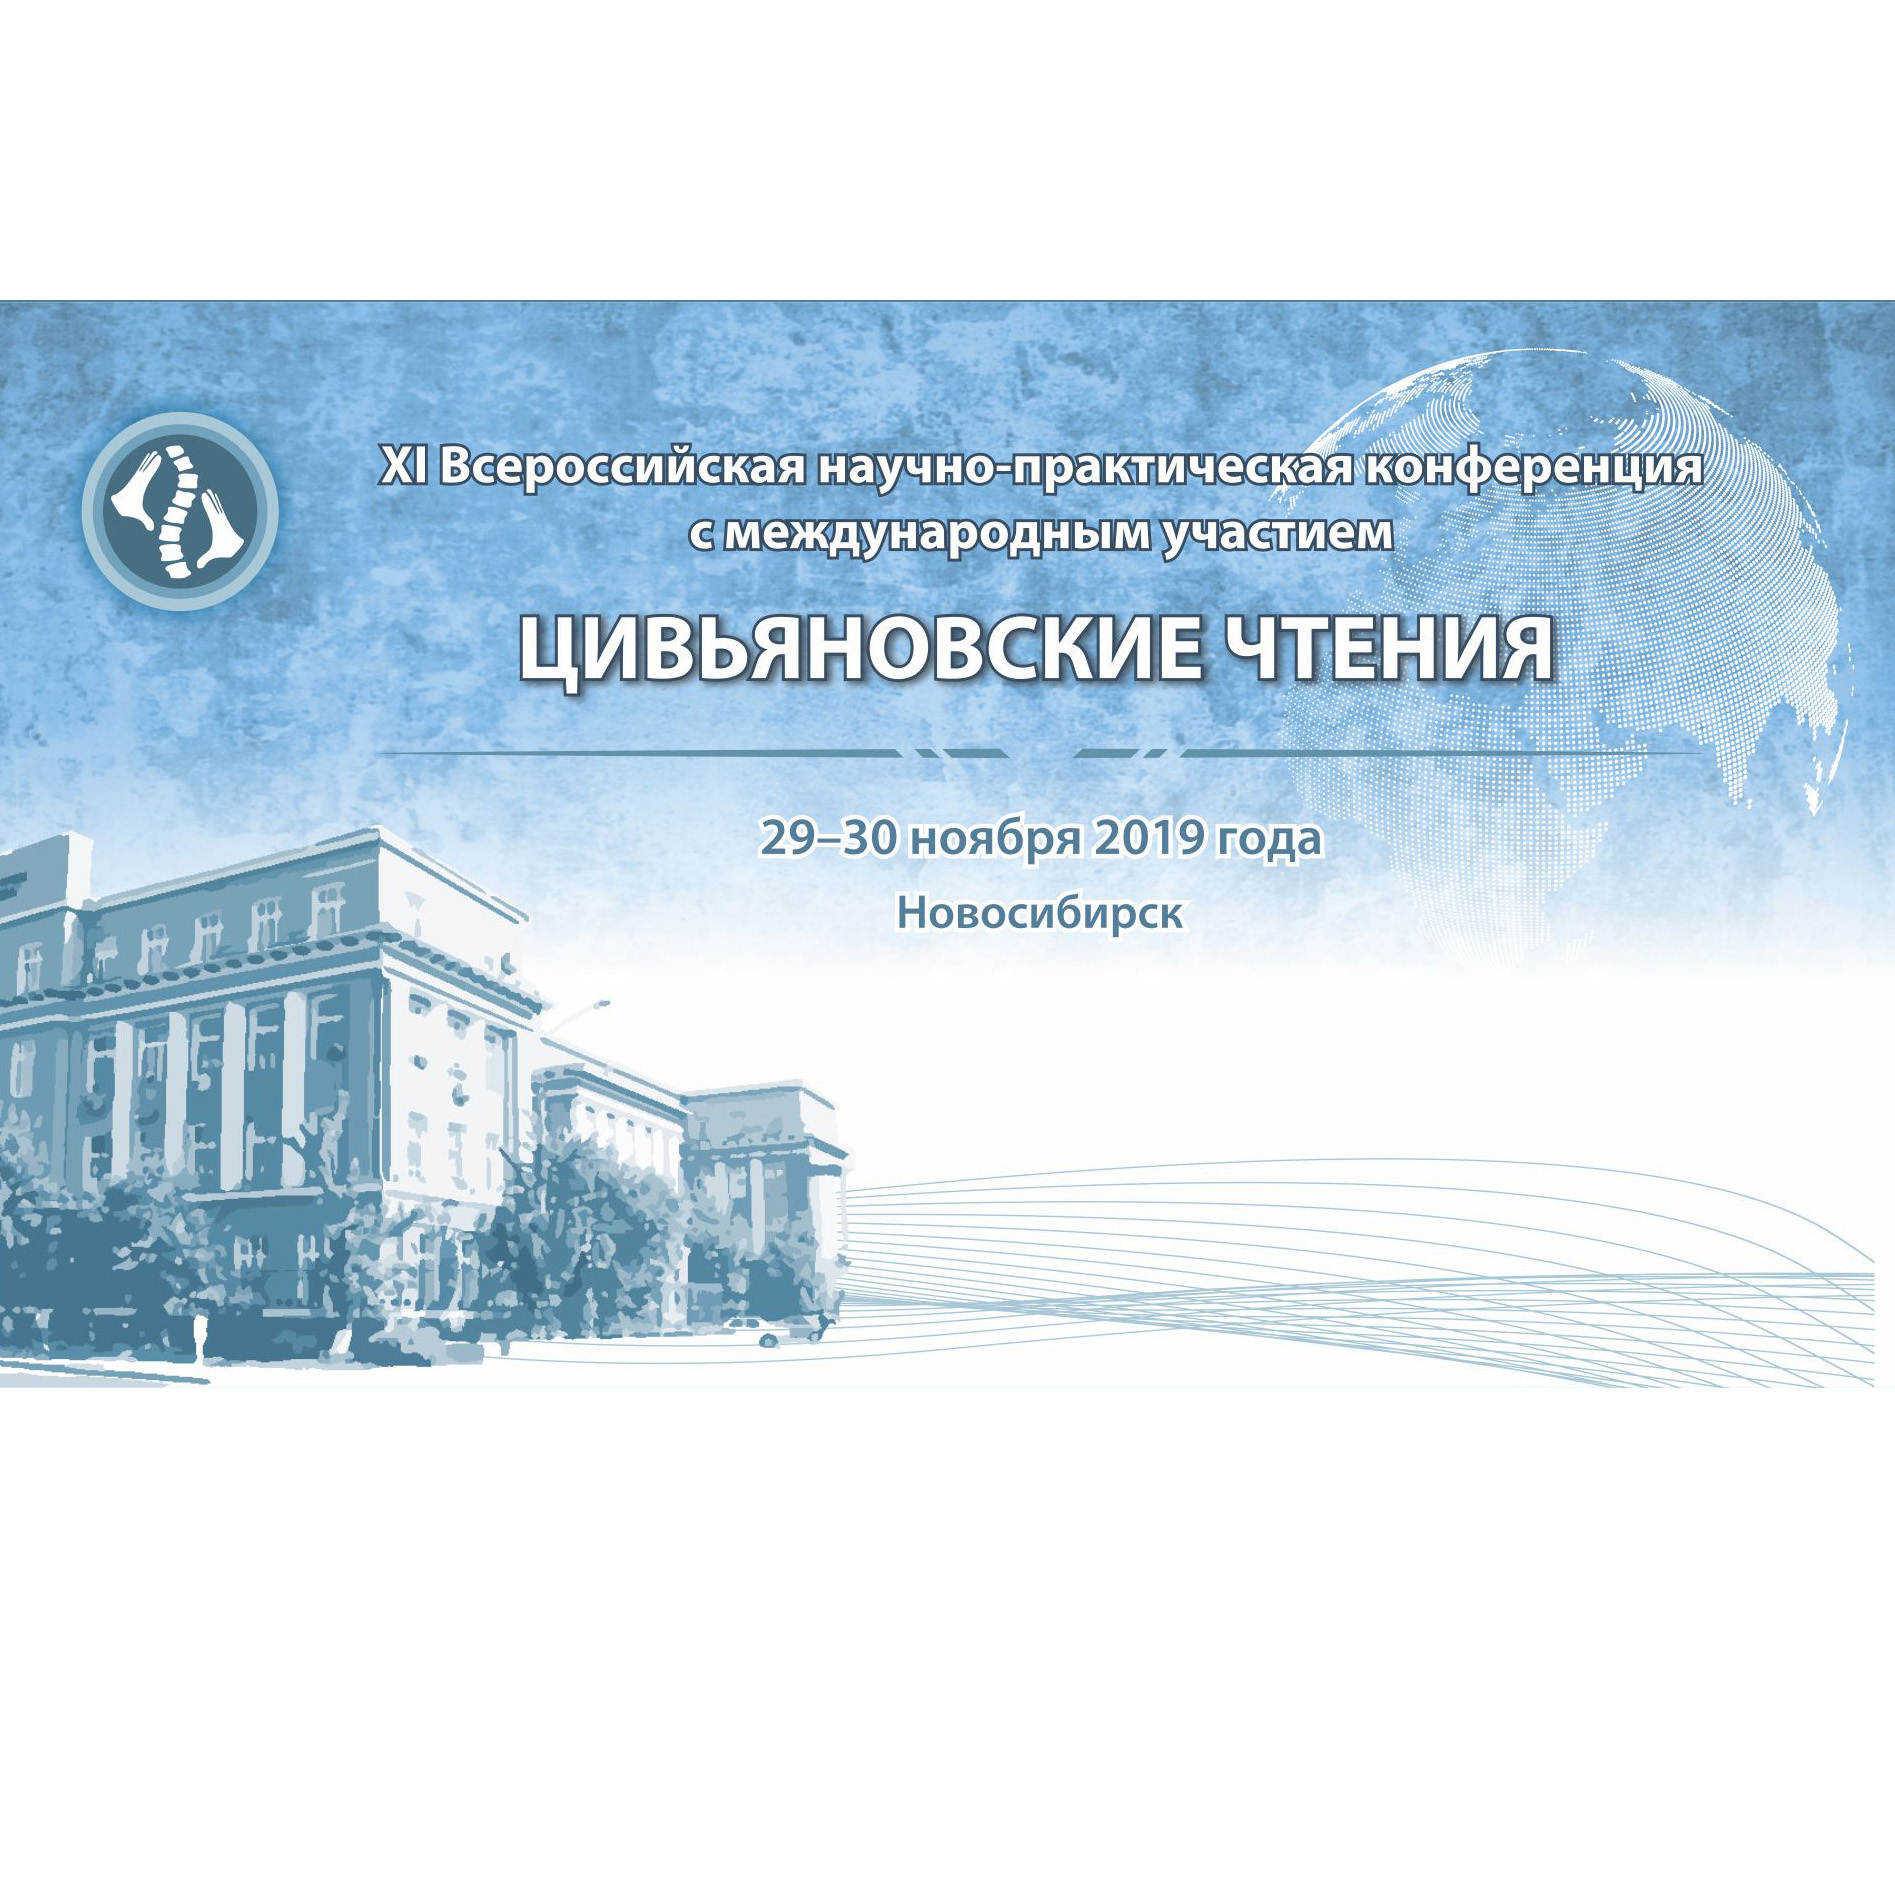 XI Всероссийская научно-практическая конференция с международным участием «Цивьяновские чтения»